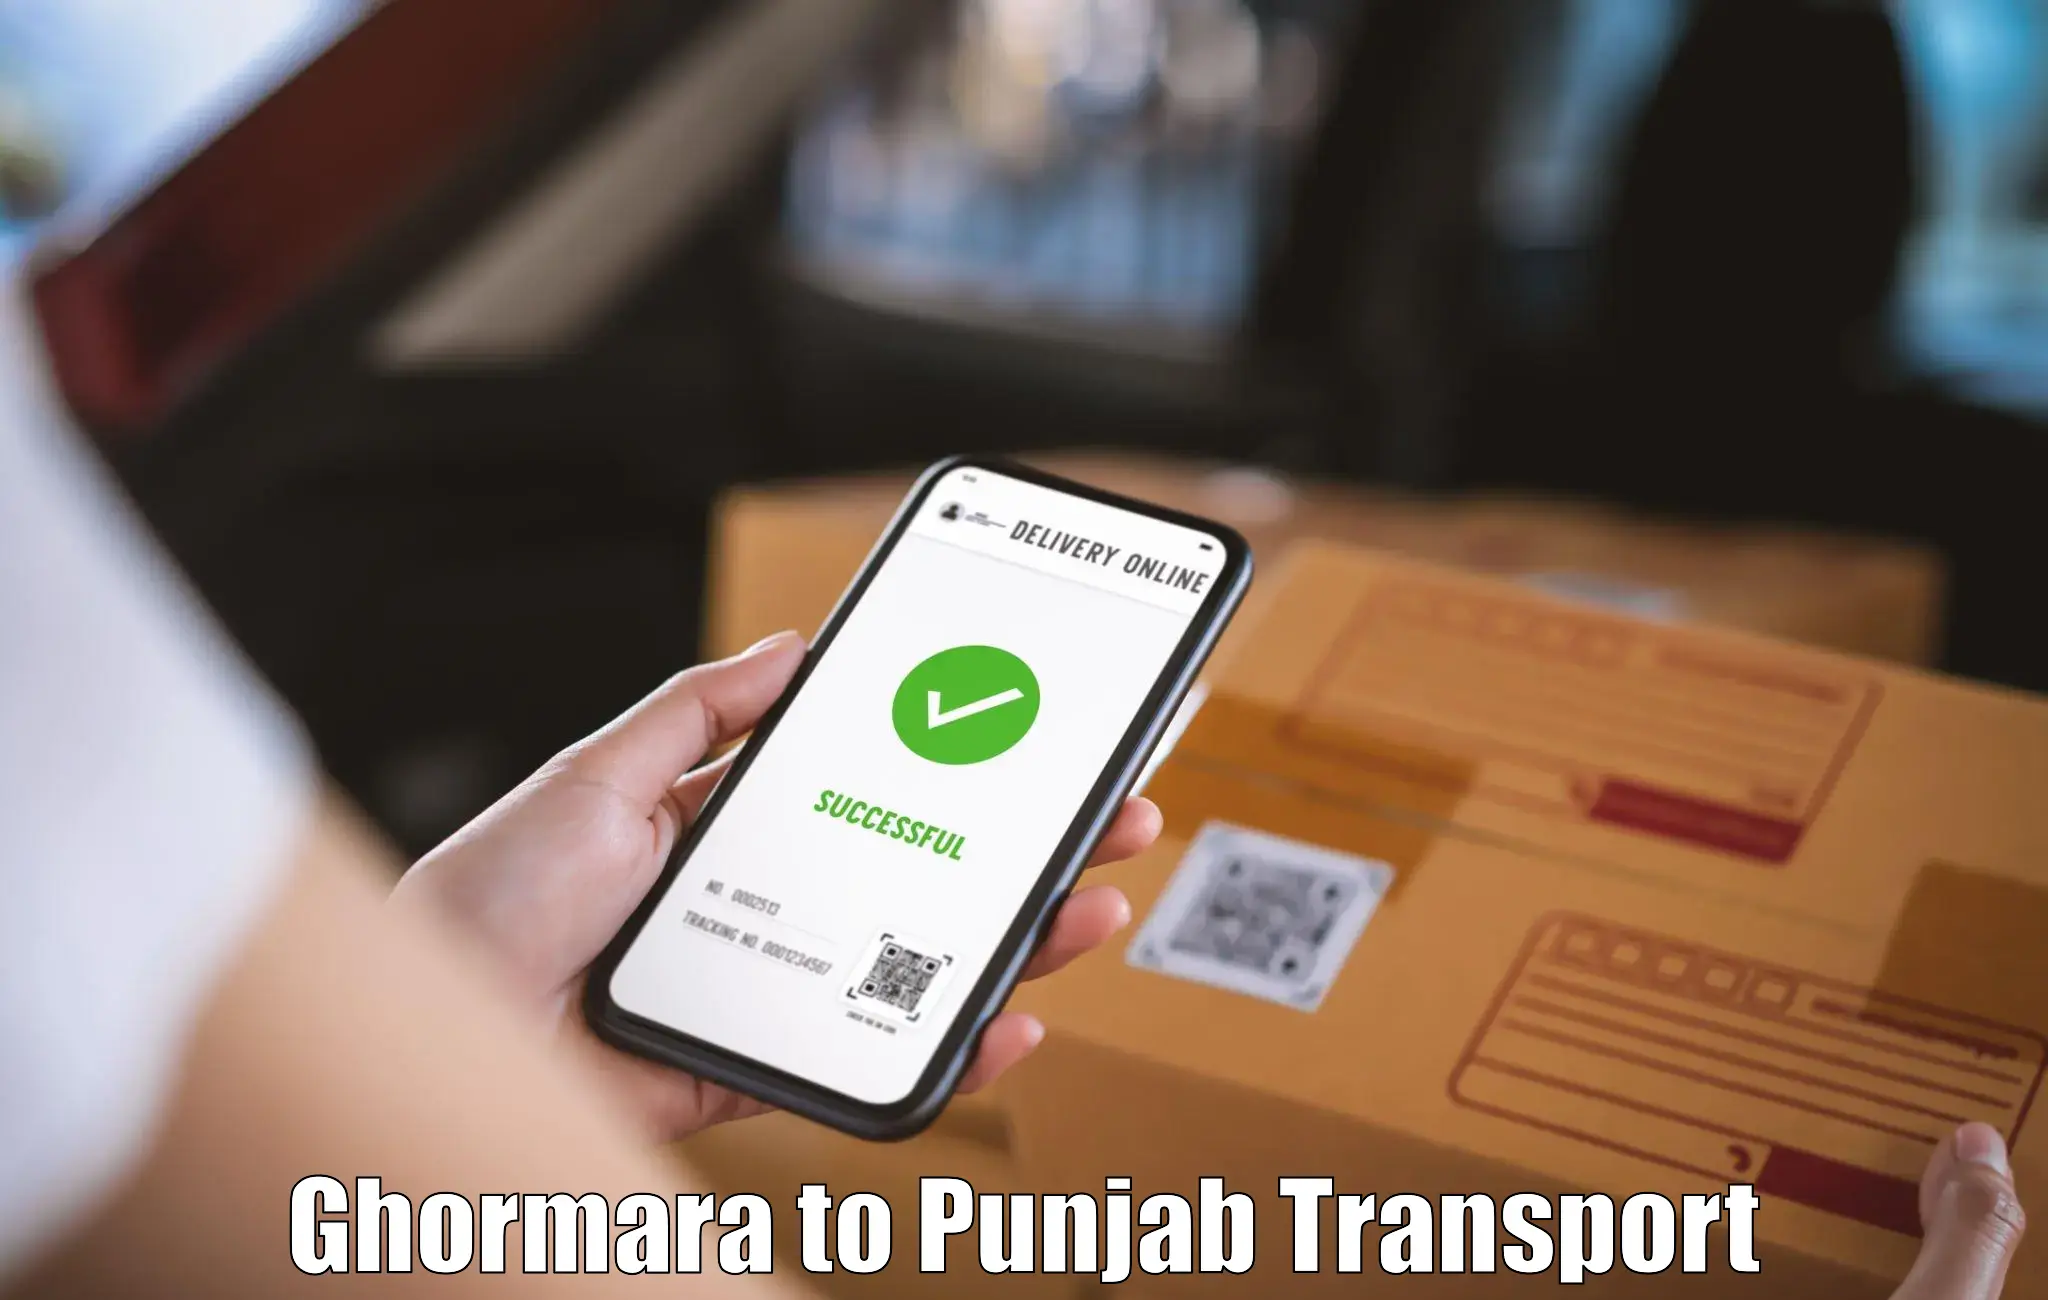 Online transport booking Ghormara to Nakodar